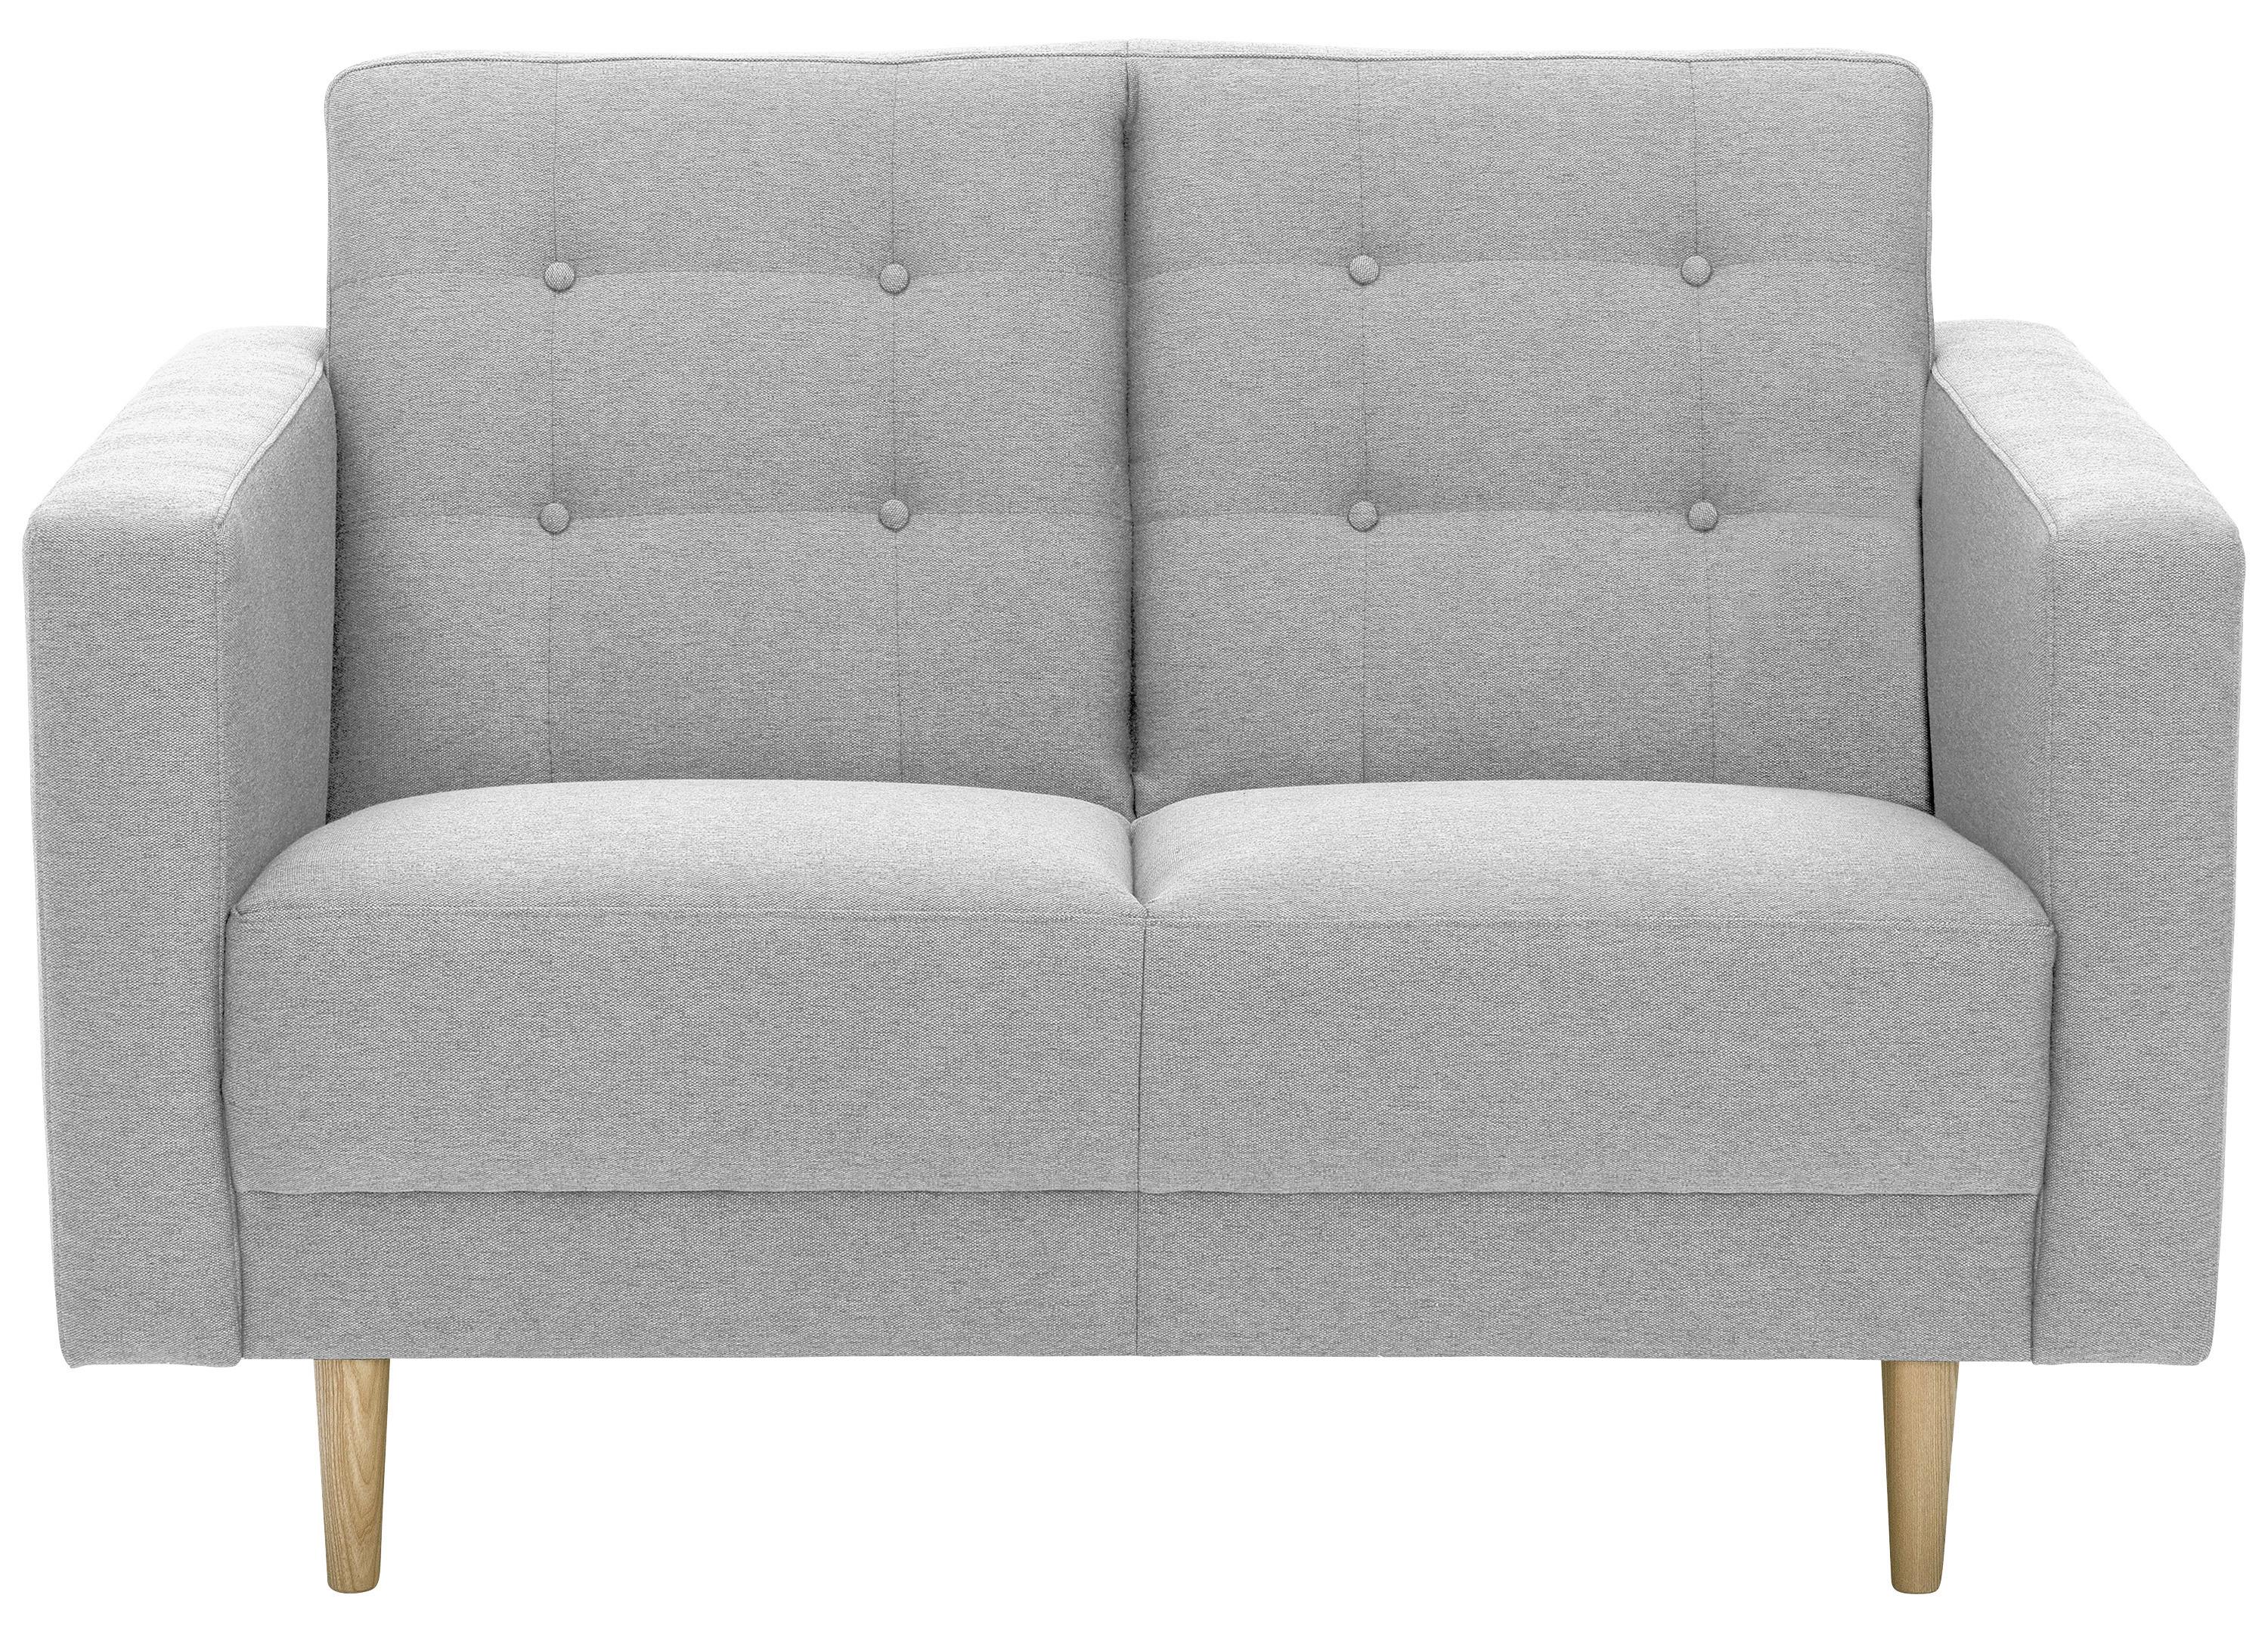 2-Sitzer-Sofa + Schlaffunktion Jasmin mit Armlehnen Hellgrau - Eschefarben/Hellgrau, MODERN, Textil (128/81/83cm) - Max Winzer